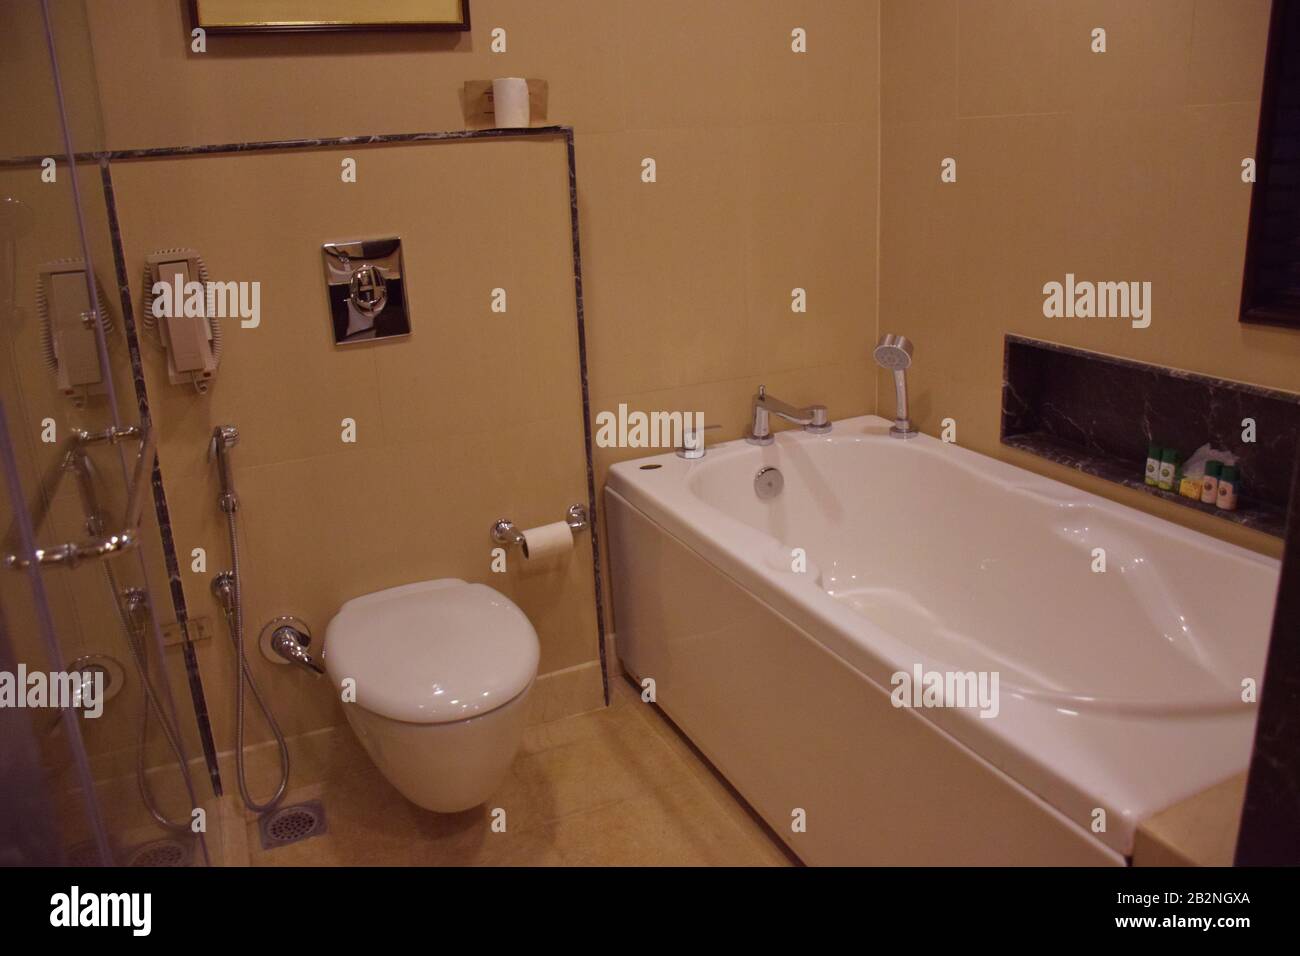 Ein luxuriöses Hotel-Badezimmer, Toilette oder Toilette zusammen mit Badewanne Stockfoto